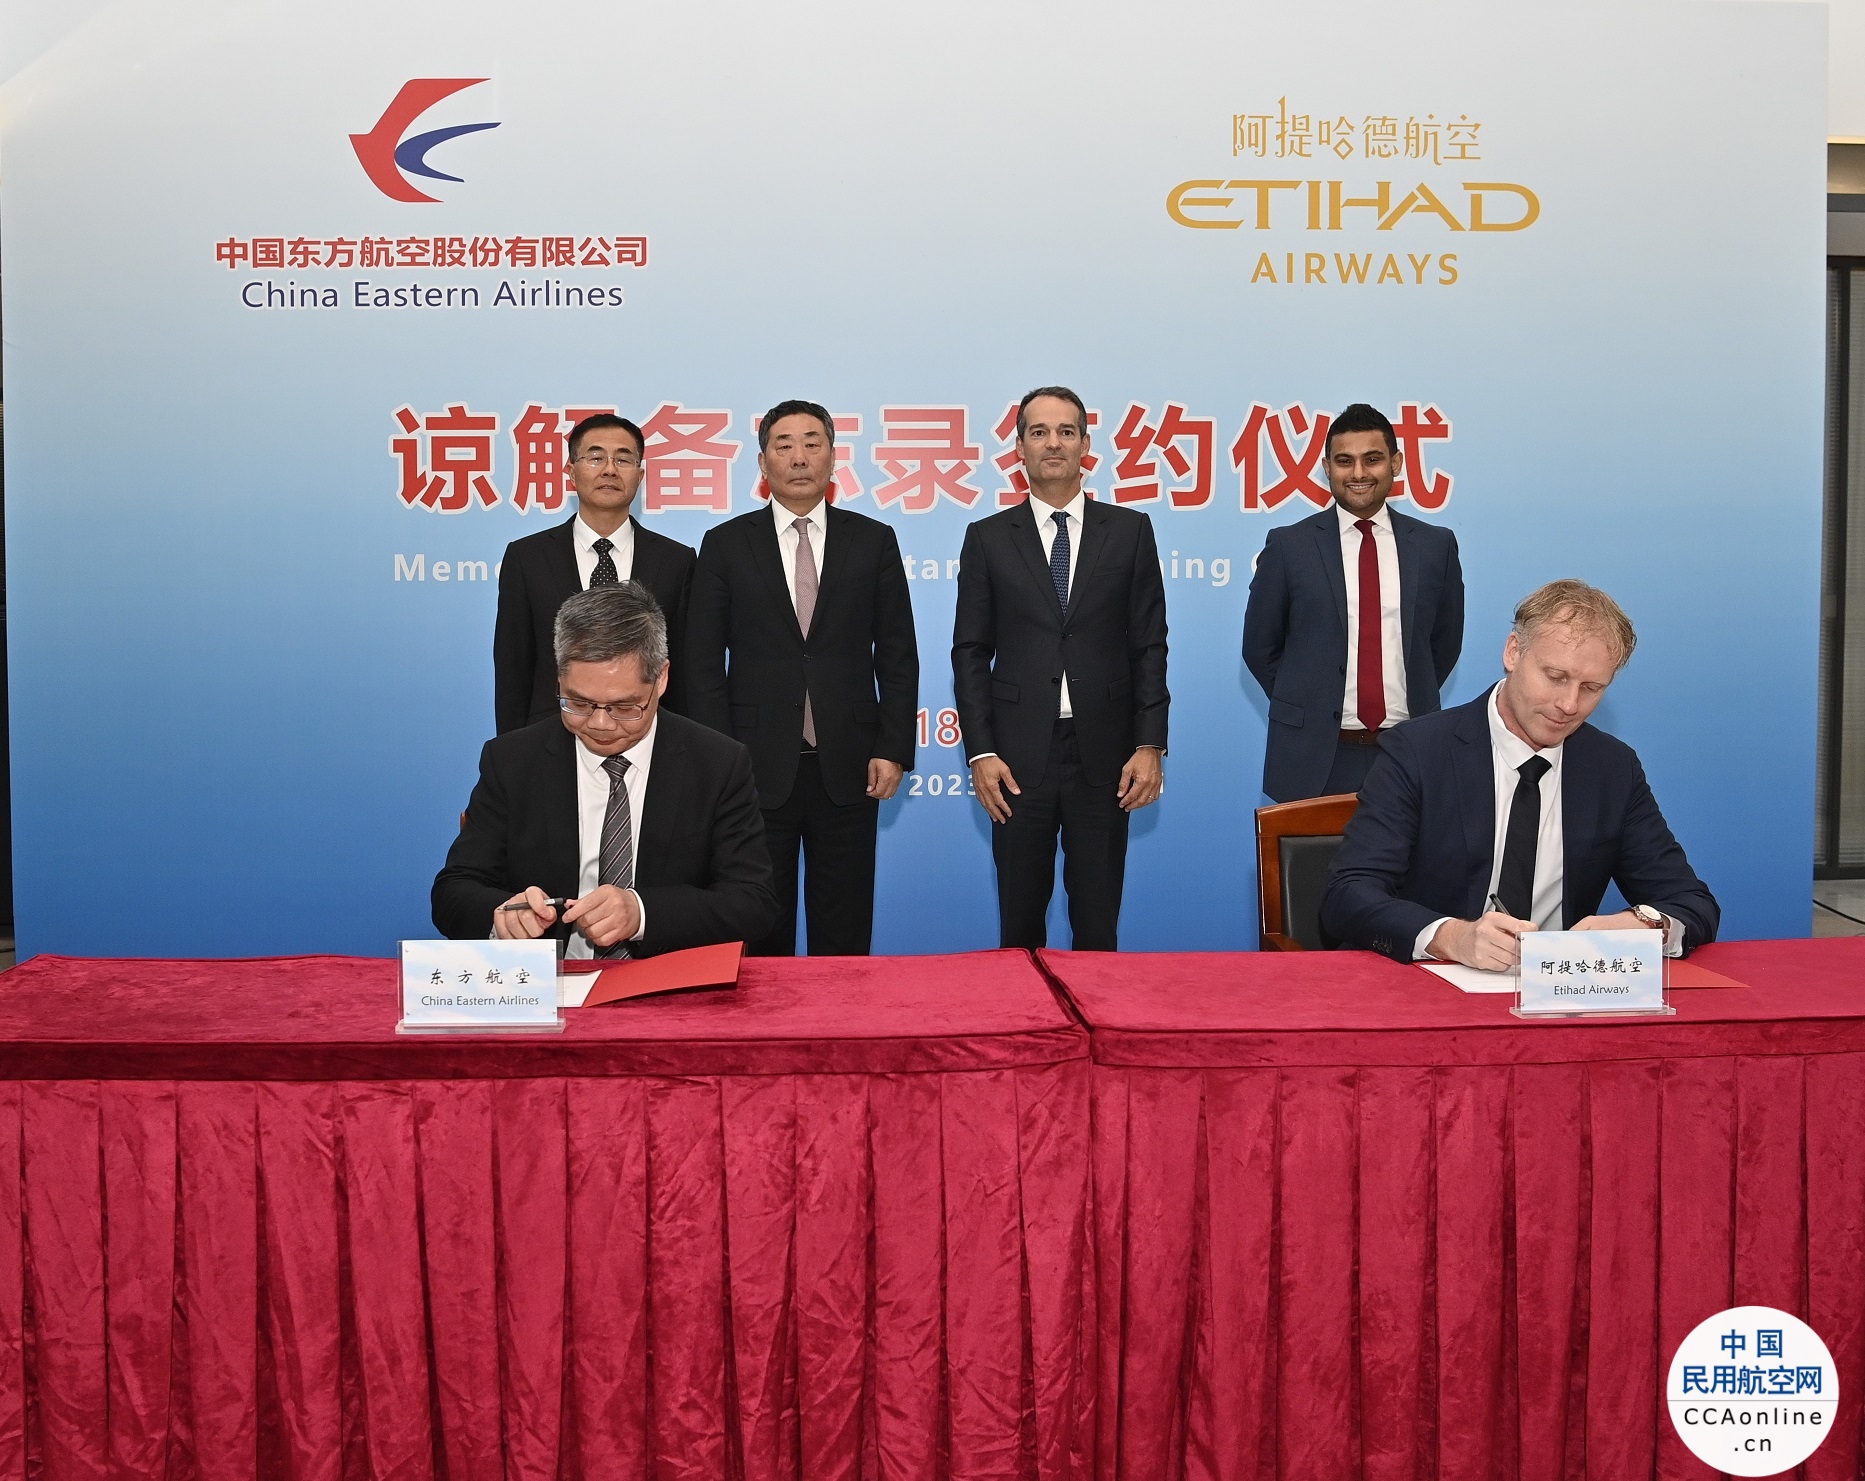 阿提哈德航空与中国东方航空携手开展战略合作